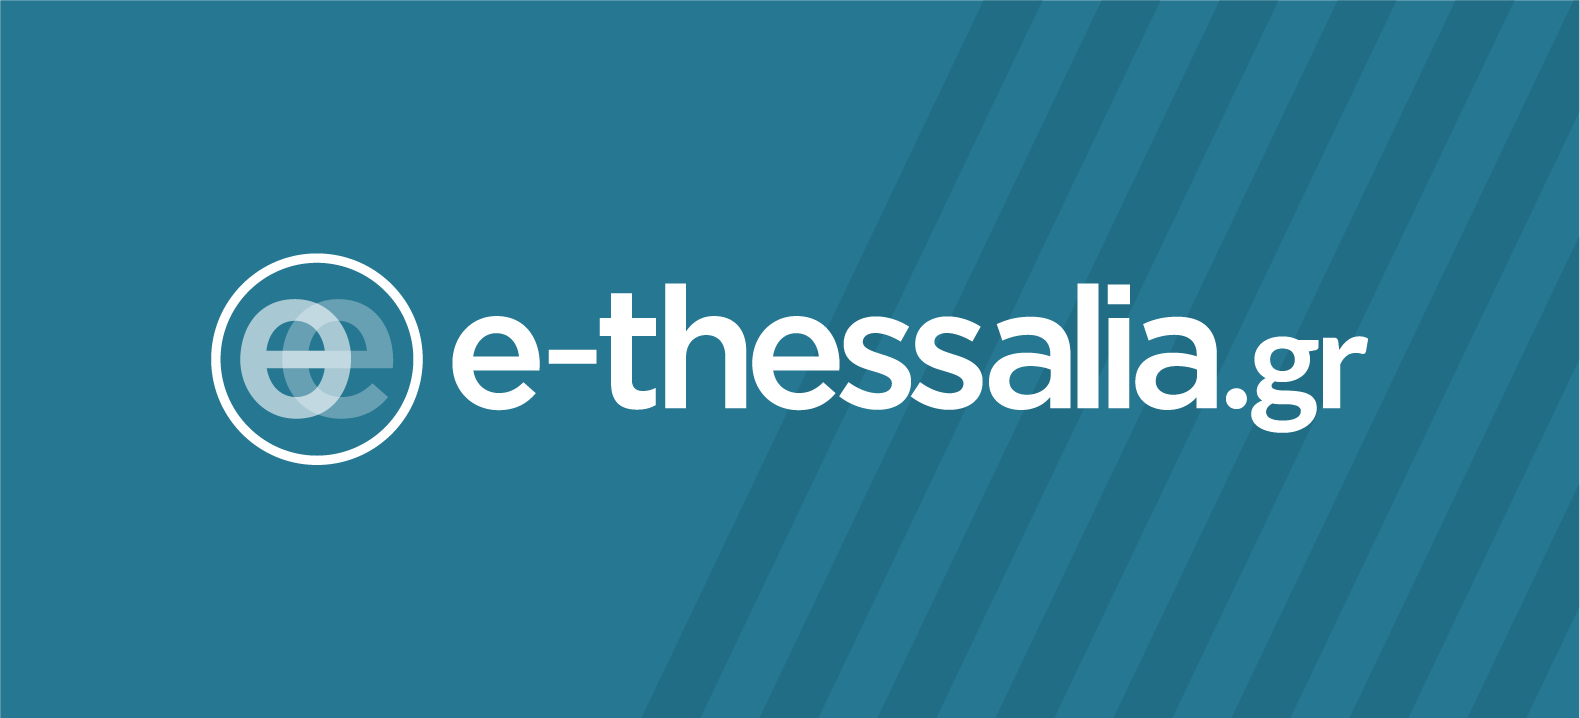 e-thessalia.gr